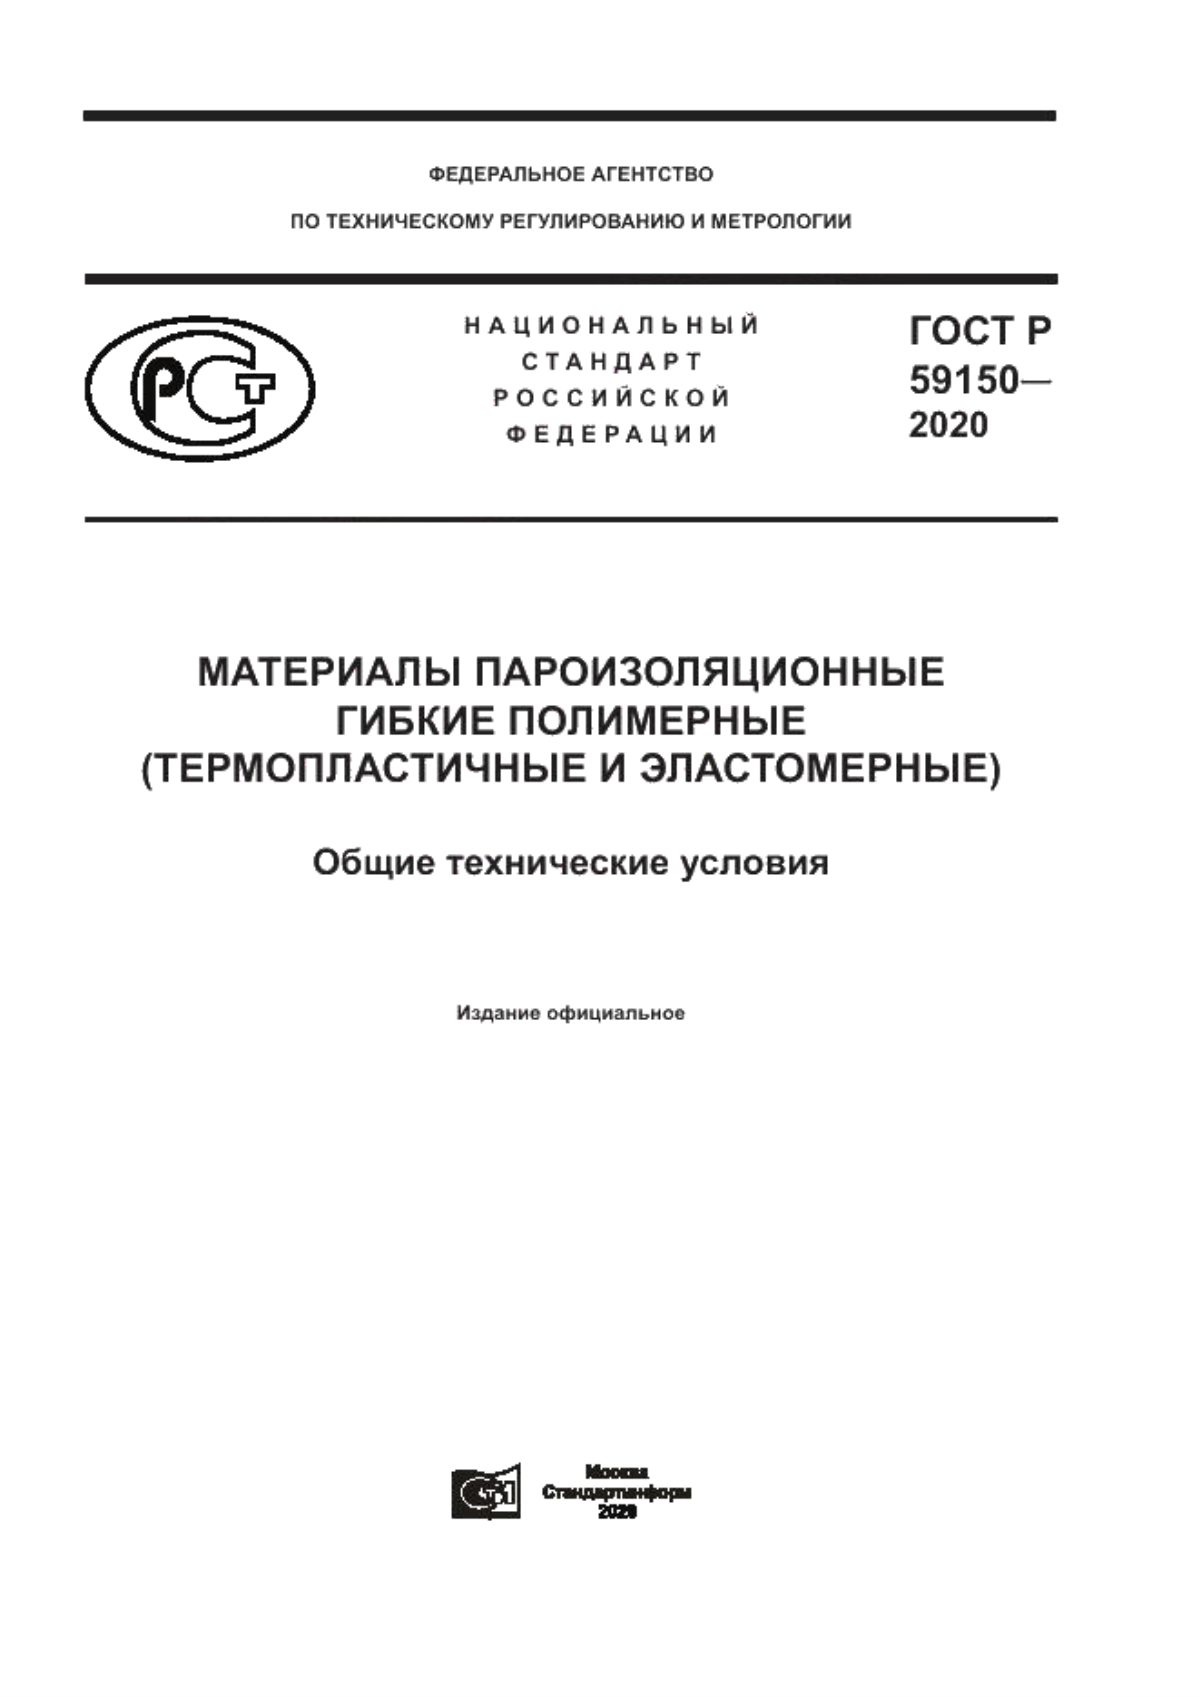 ГОСТ Р 59150-2020 Материалы пароизоляционные гибкие полимерные (термопластичные и эластомерные). Общие технические условия